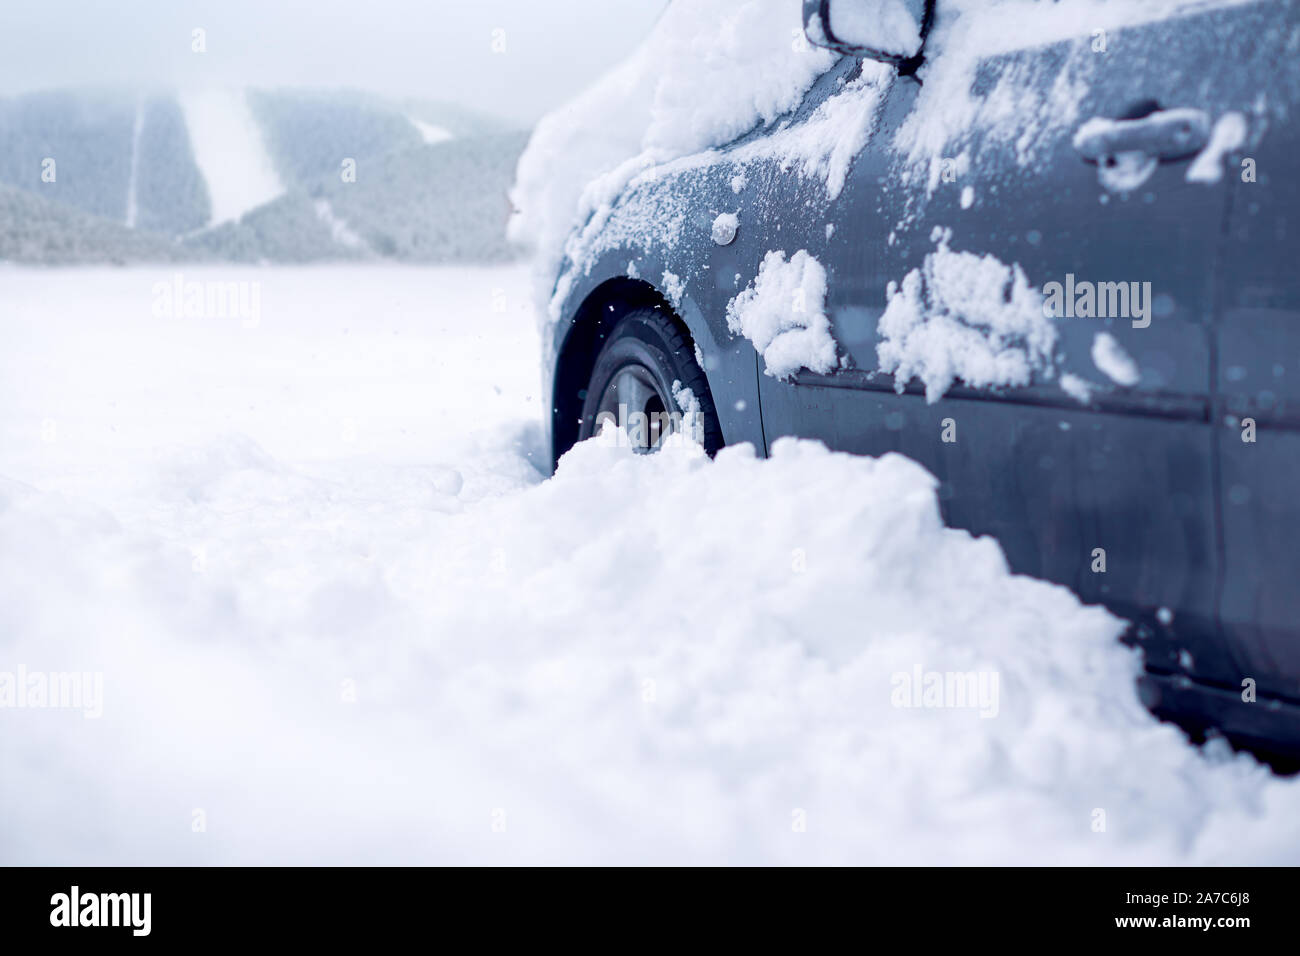 Parking couvert de neige sur une froide journée d'hiver.voiture gelé recouvert de neige au jour d'hiver, l'arrière-plan Banque D'Images